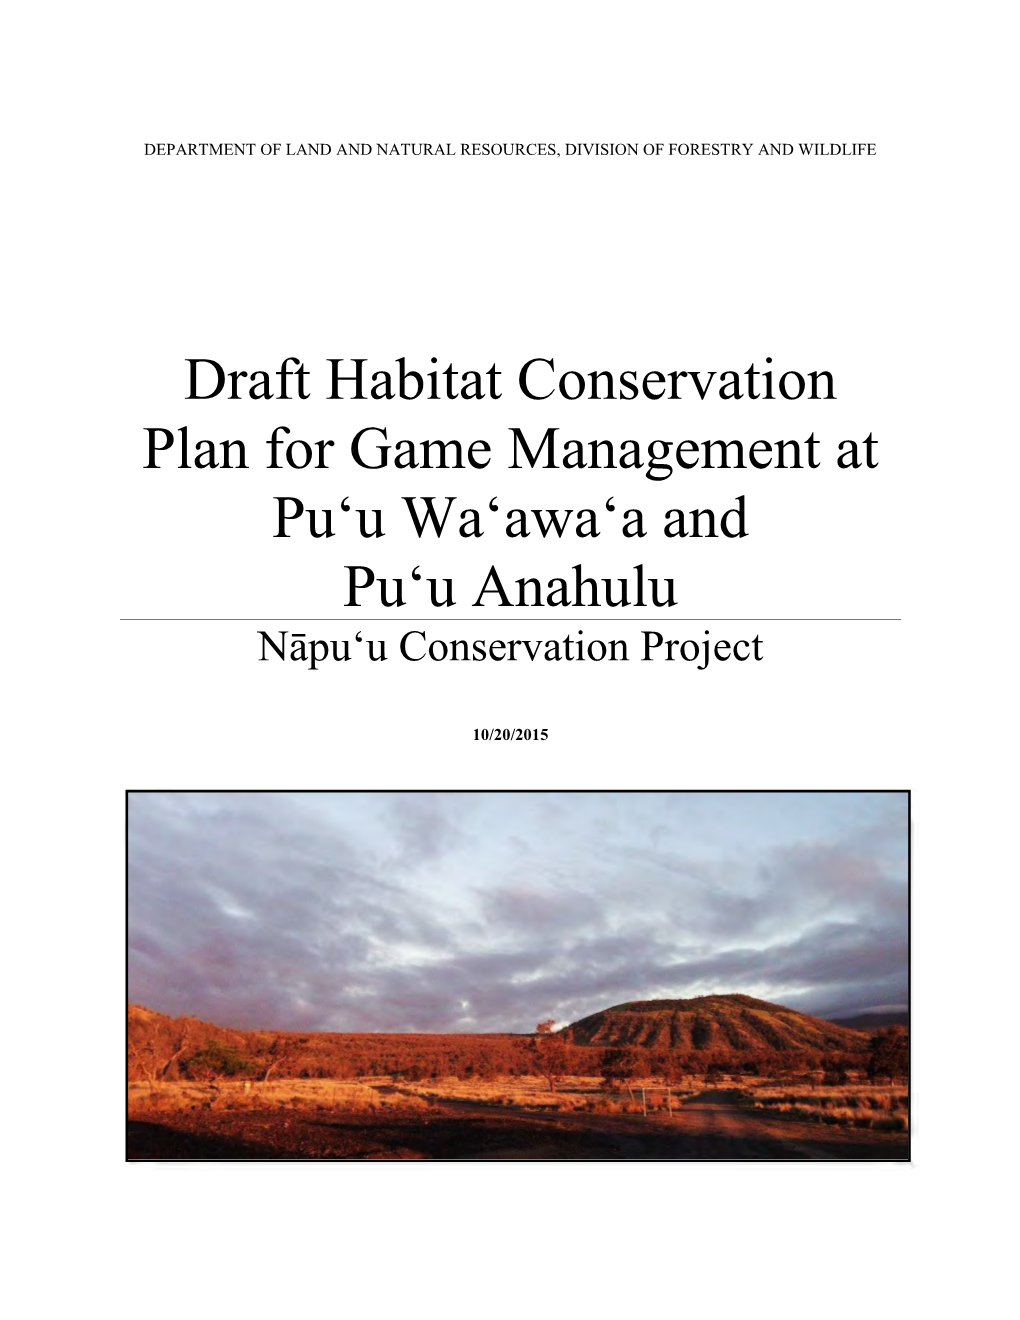 Draft Habitat Conservation Plan for Game Management at Pu'u Wa'awa